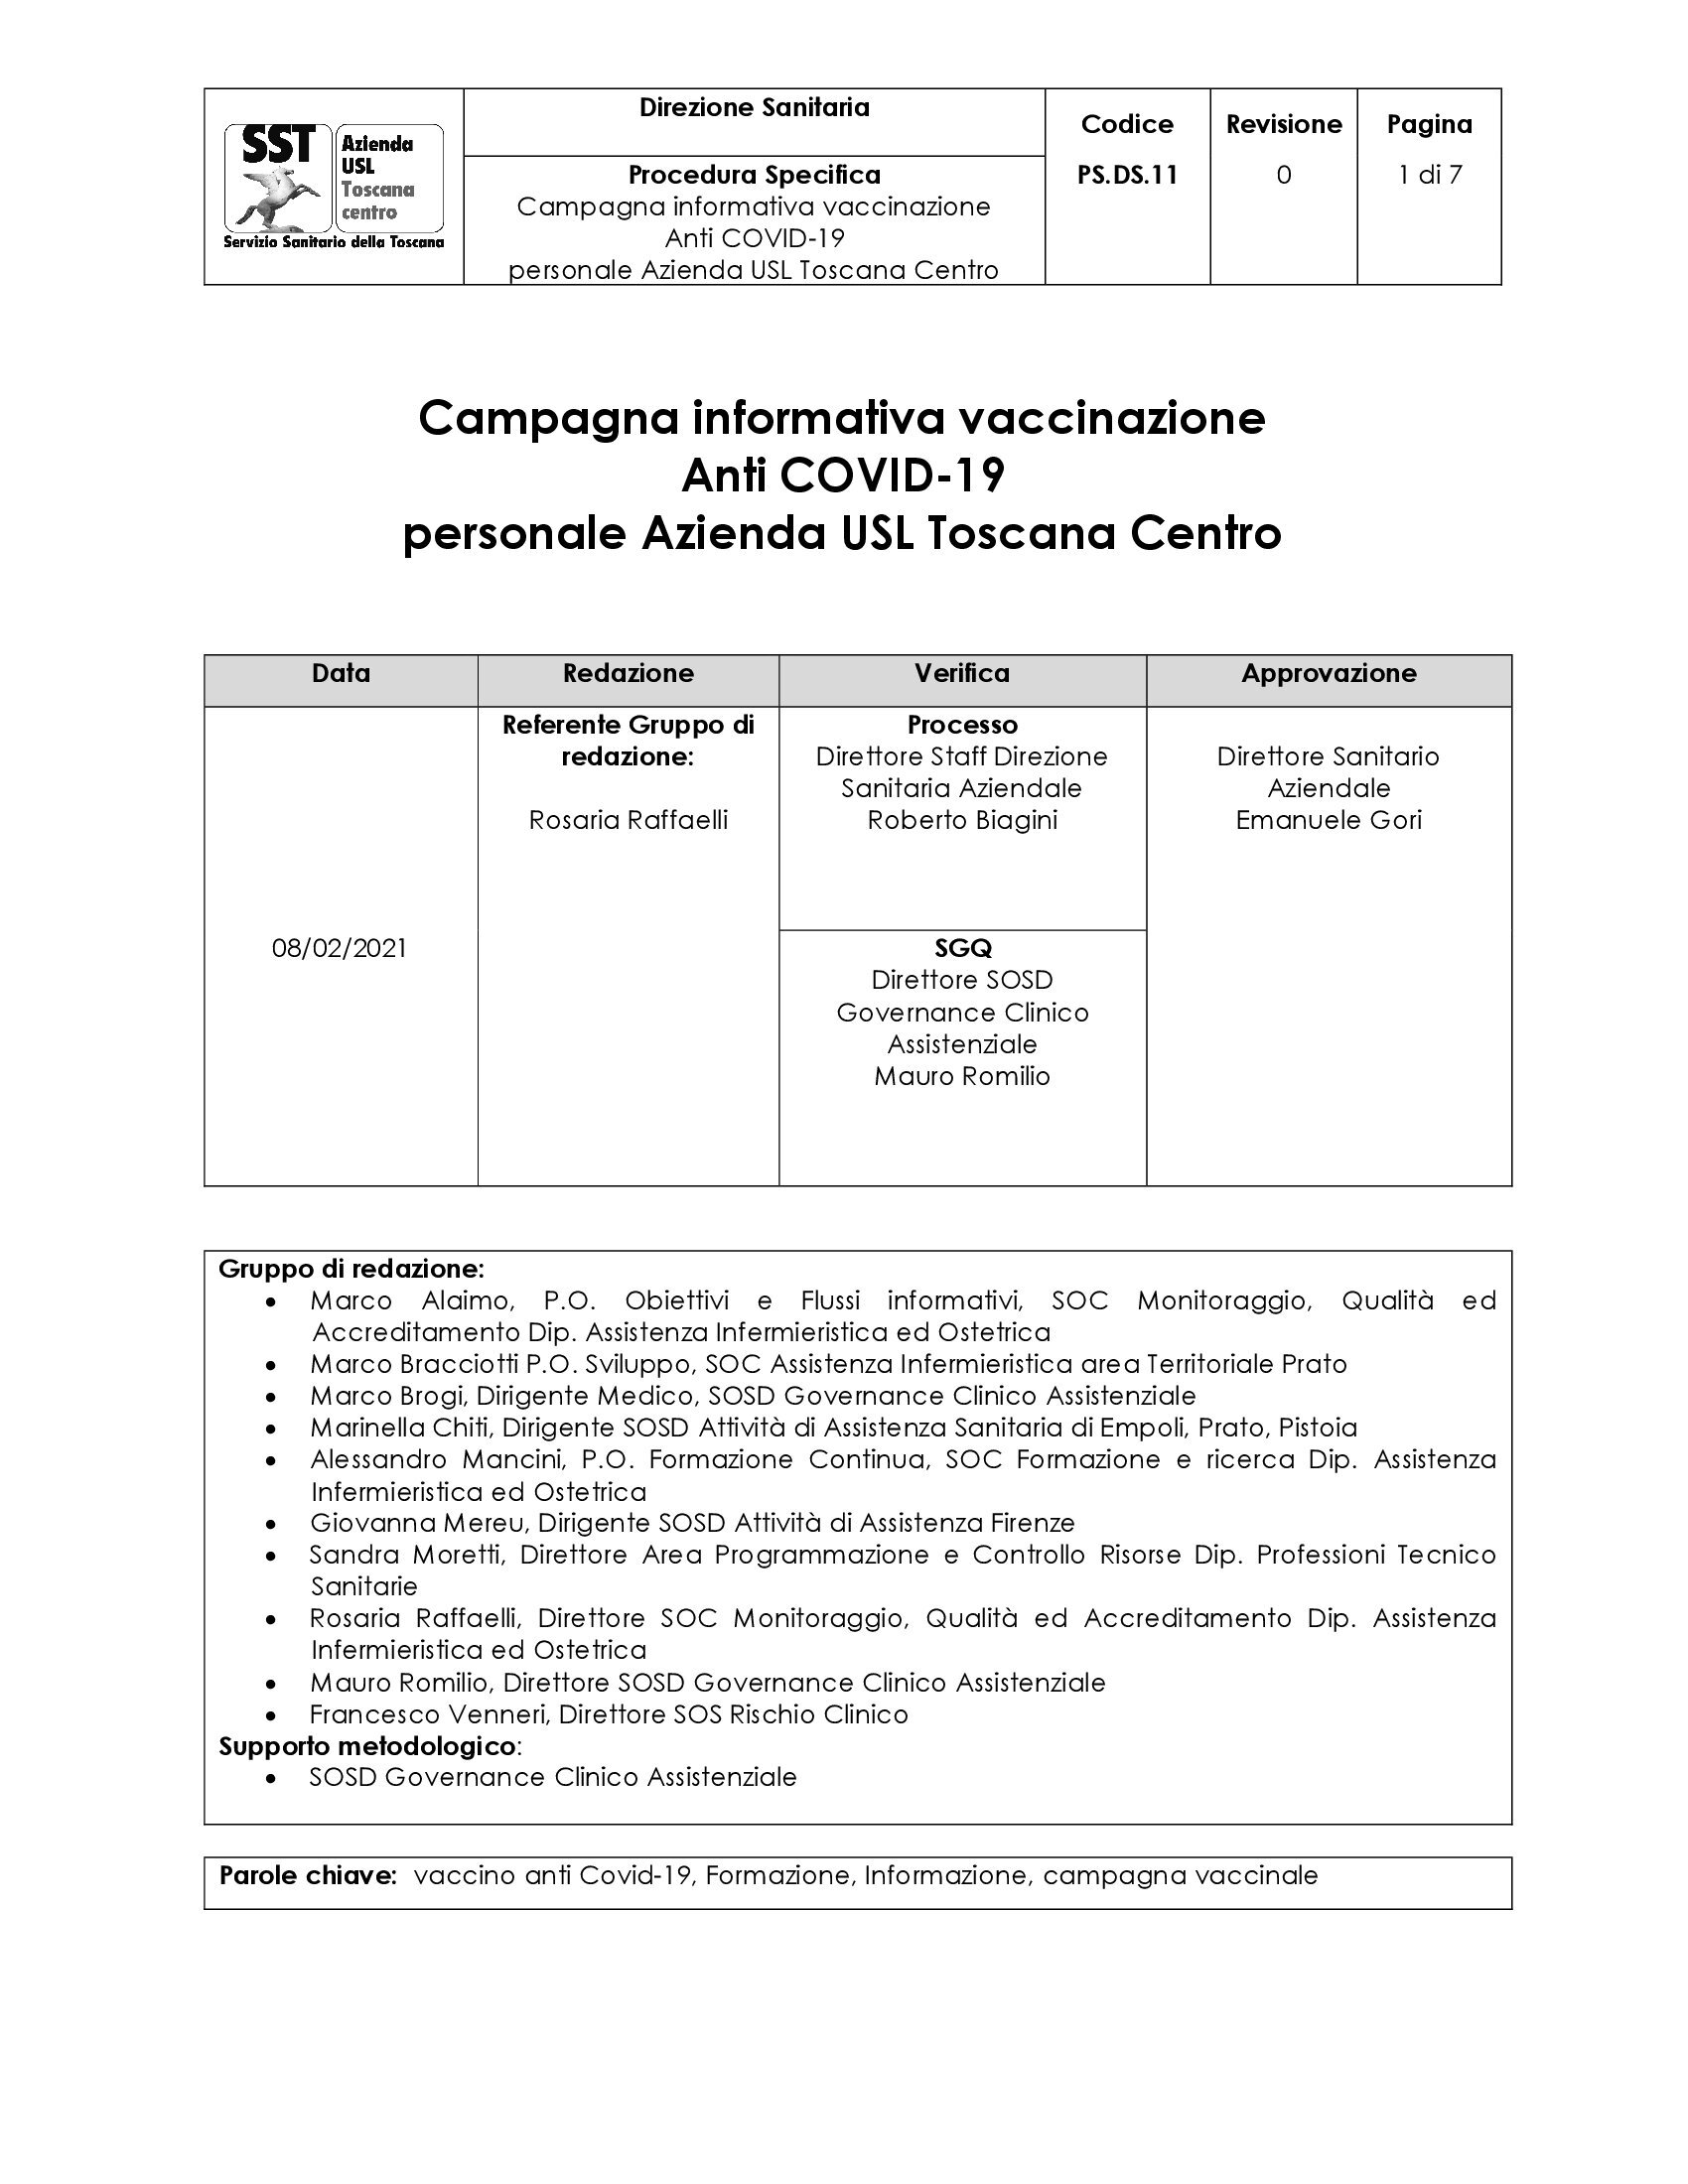 PS.DS.11 Campagna informativa vaccinazione Anti COVID-19 personale Azienda USL Toscana Centro